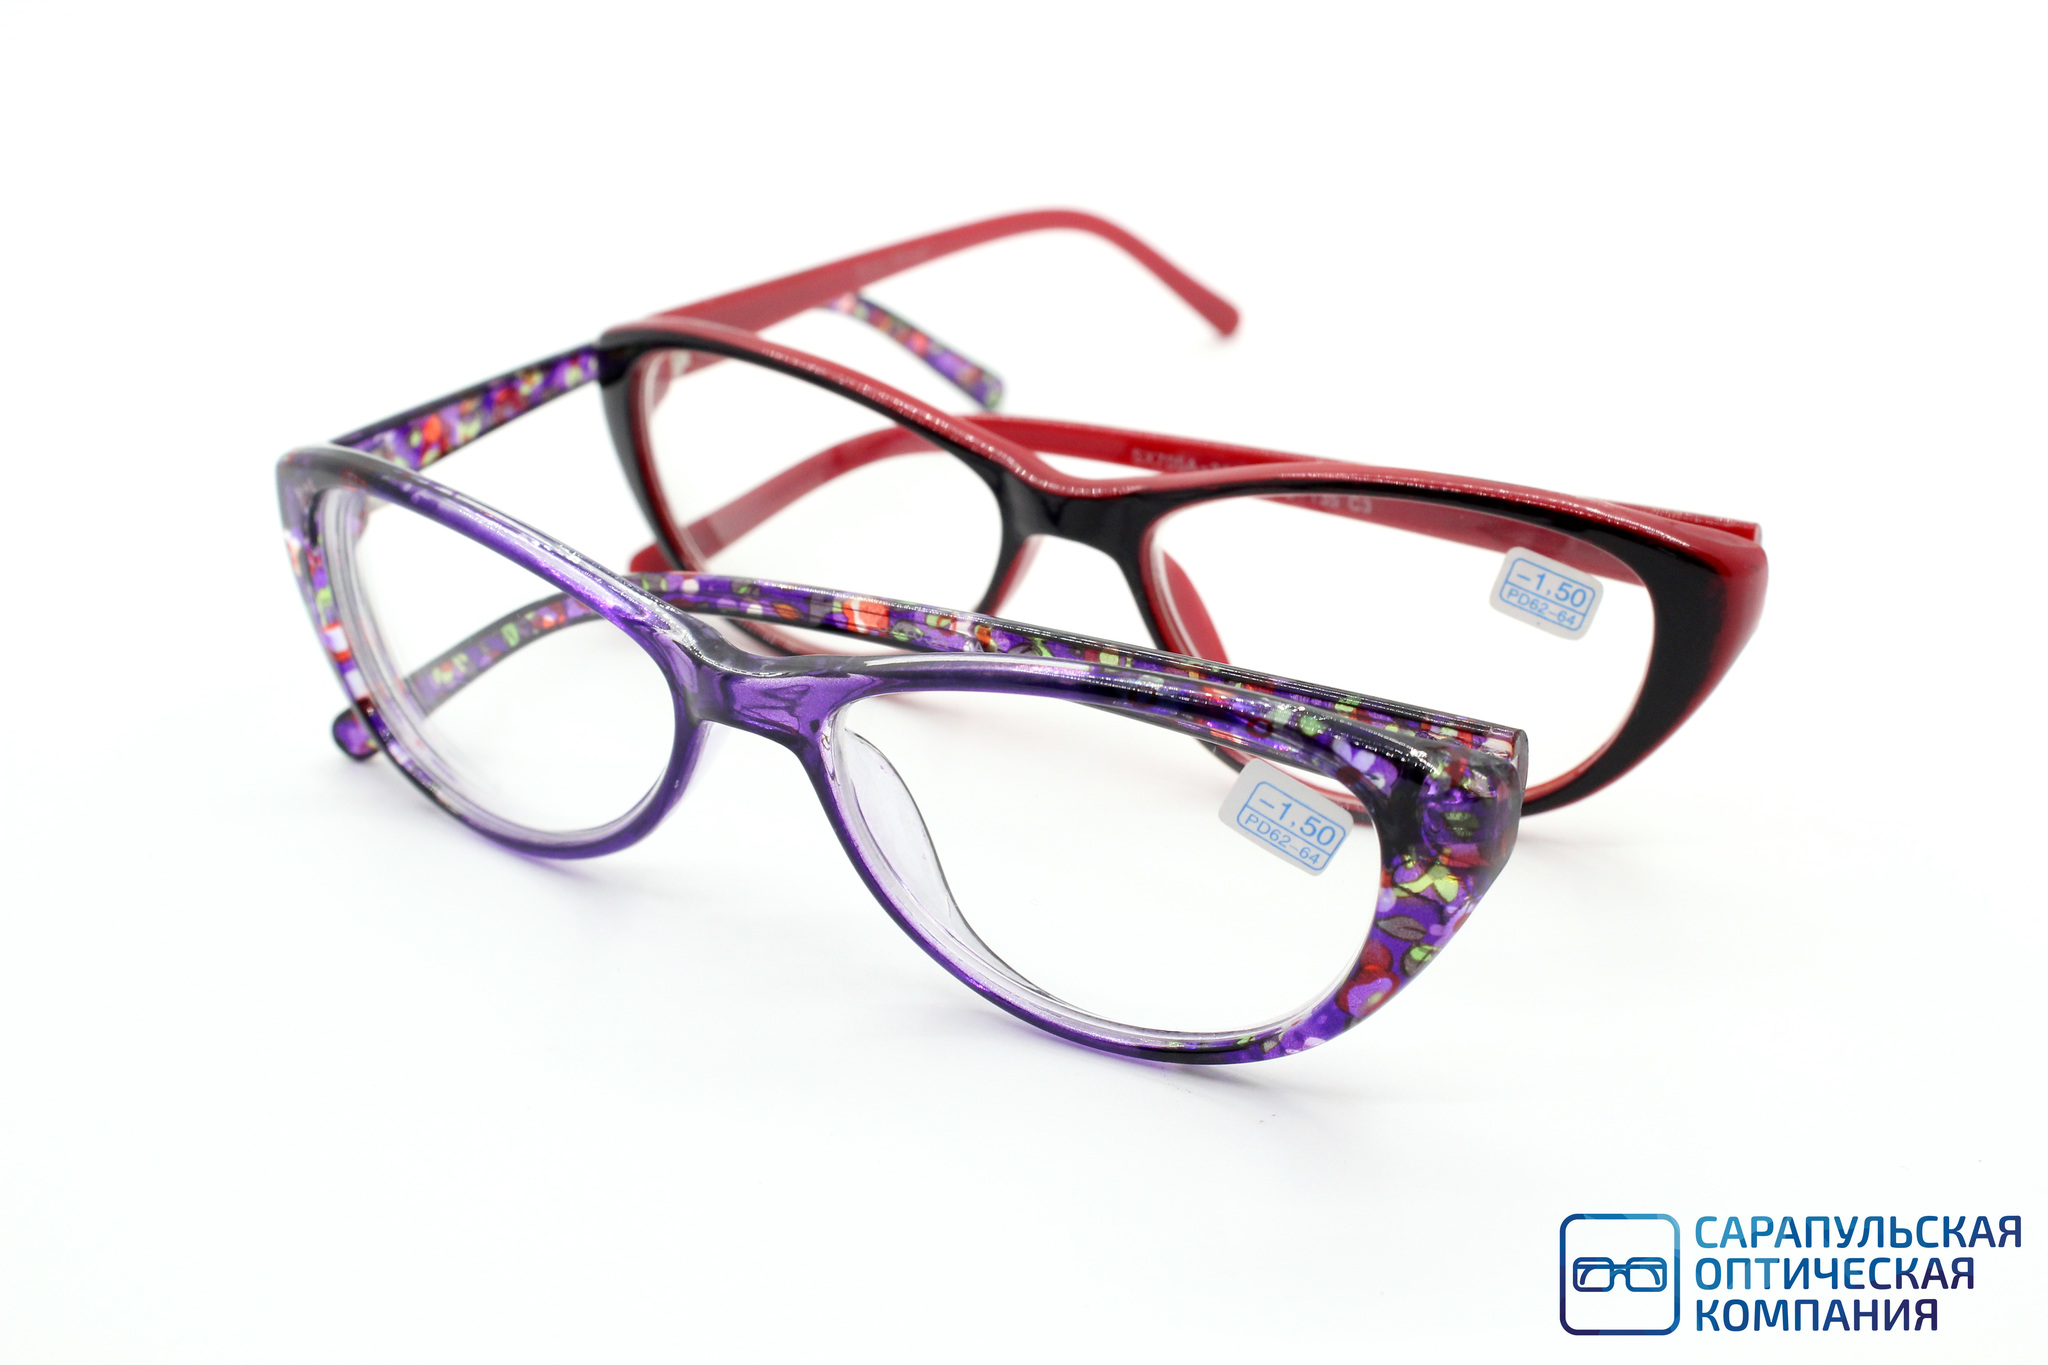 Очки для зрения Fabia Monti. Готовые очки с диоптриями. Fabia Monti пластик фиолетовый. Готовые очки 0085. Очки с диоптриями купить в спб